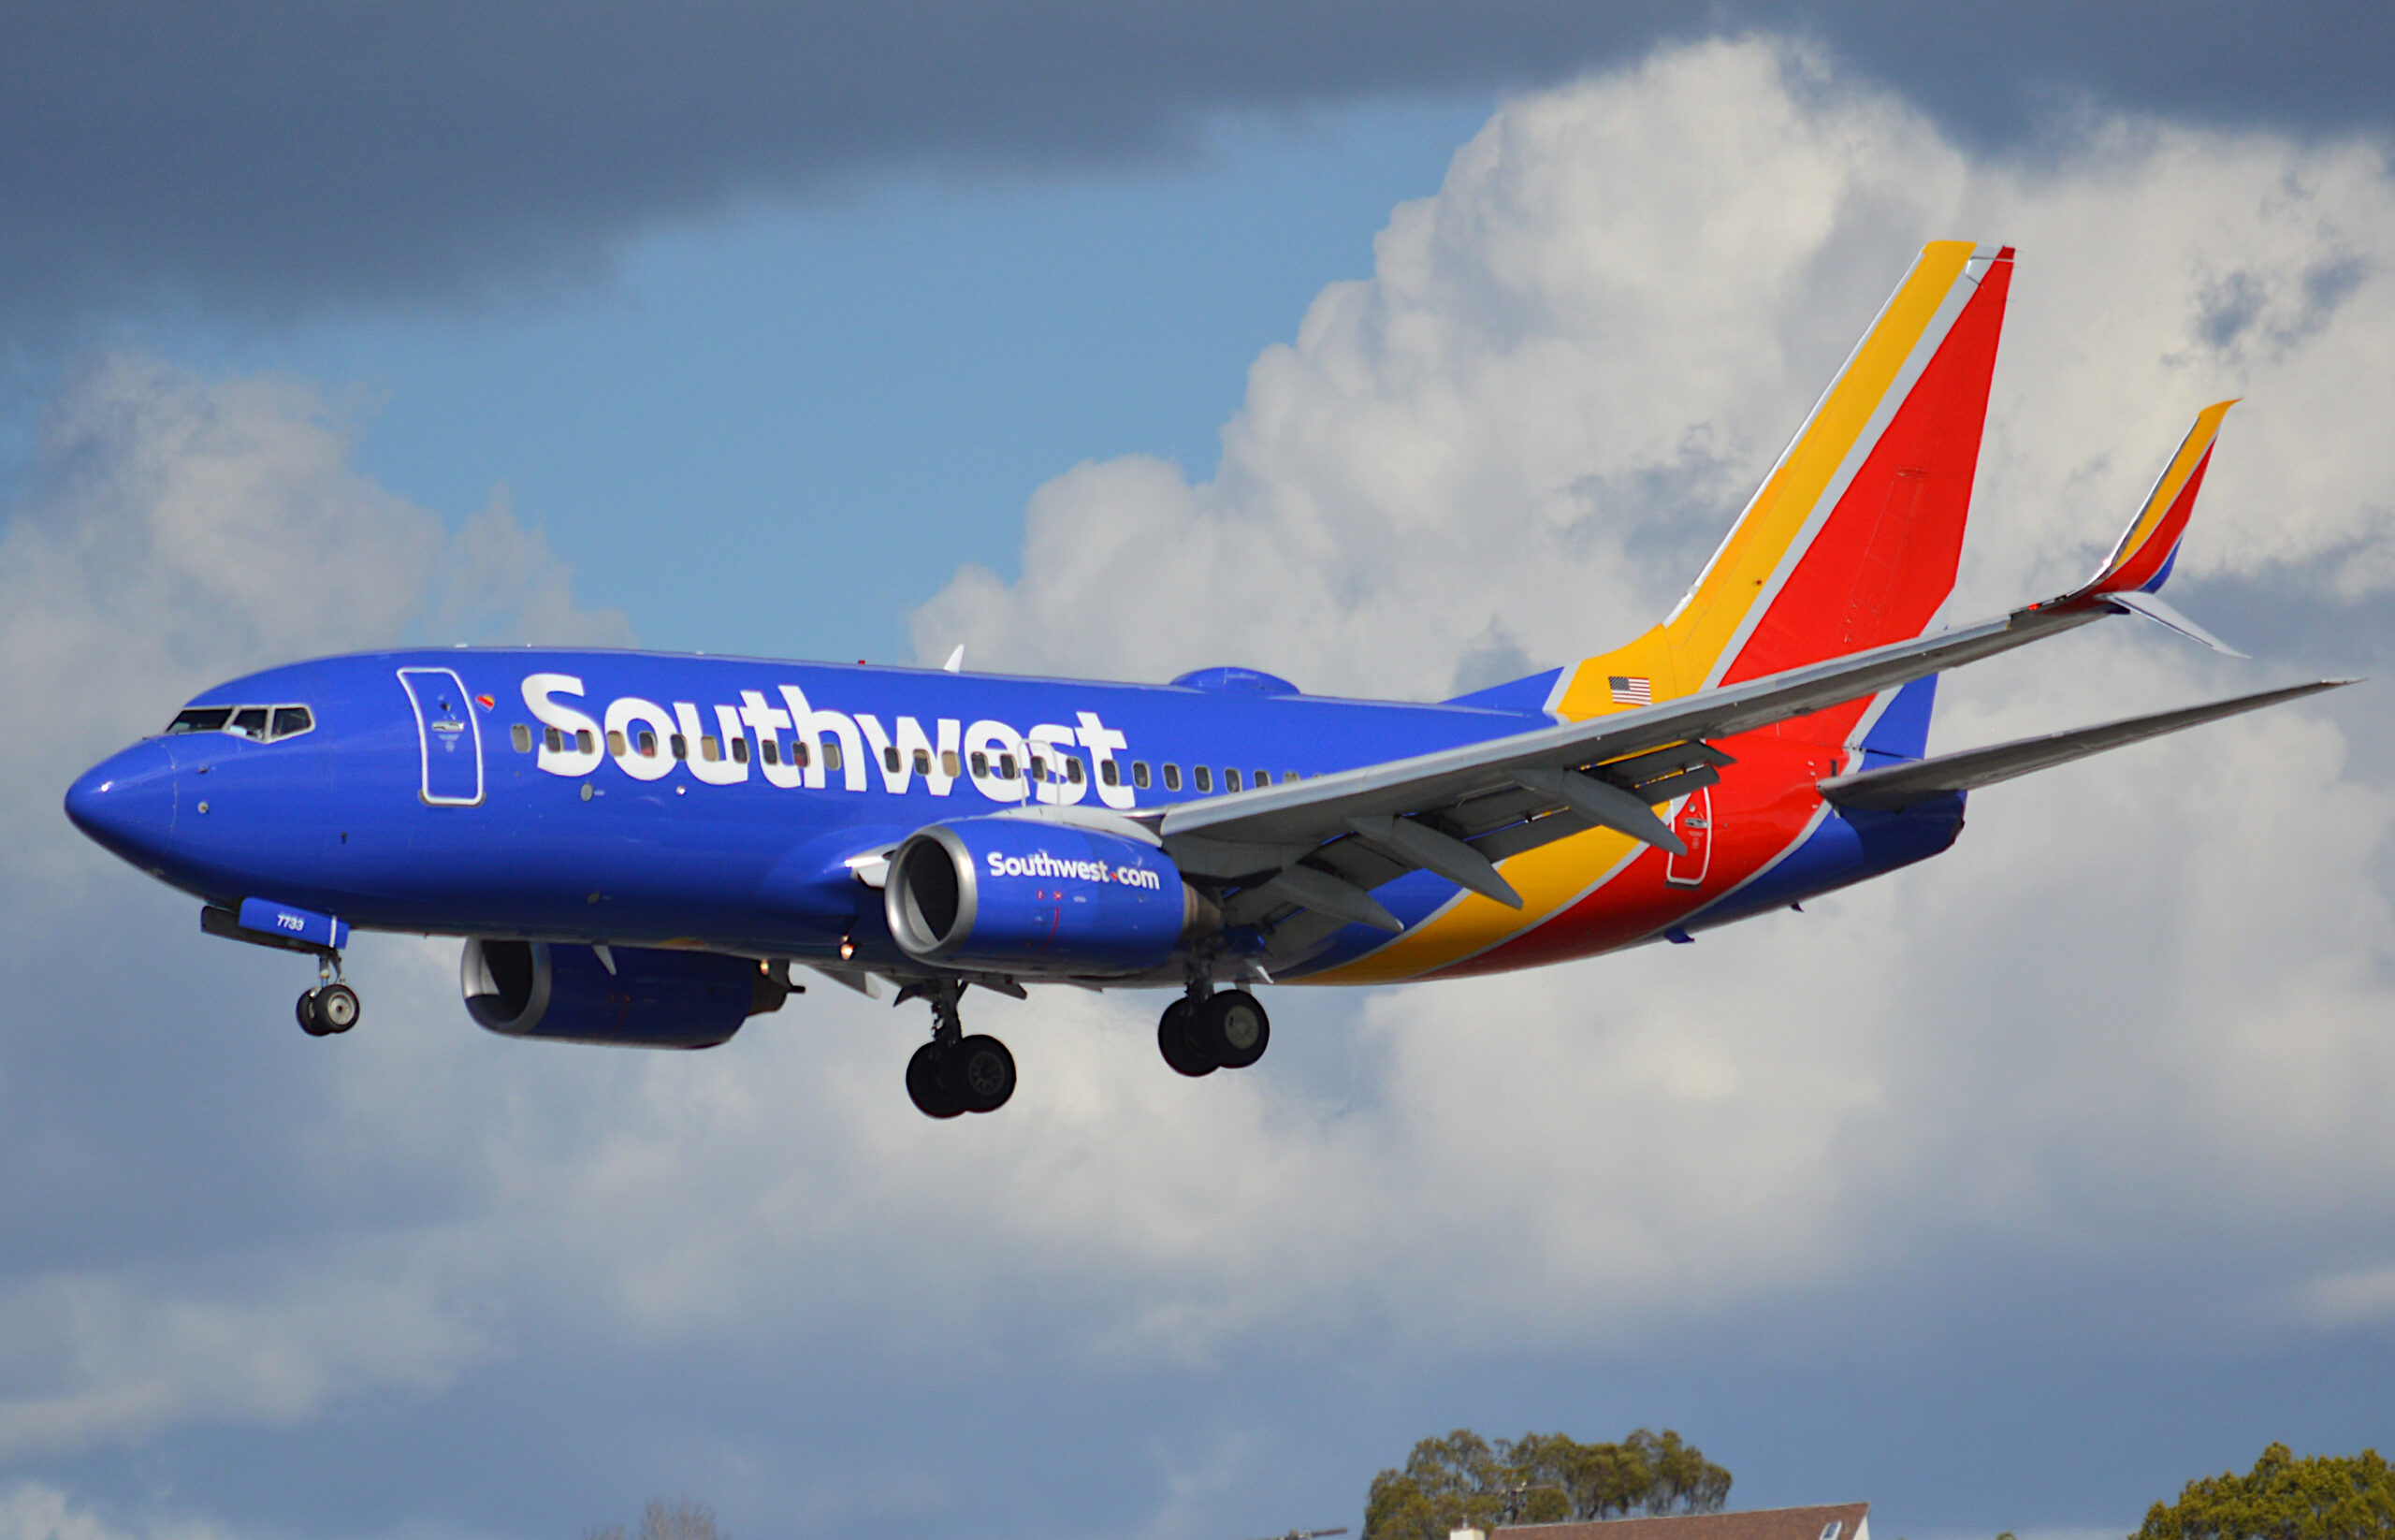 Southwest to increase flights to Punta Cana - Aviacionline.com